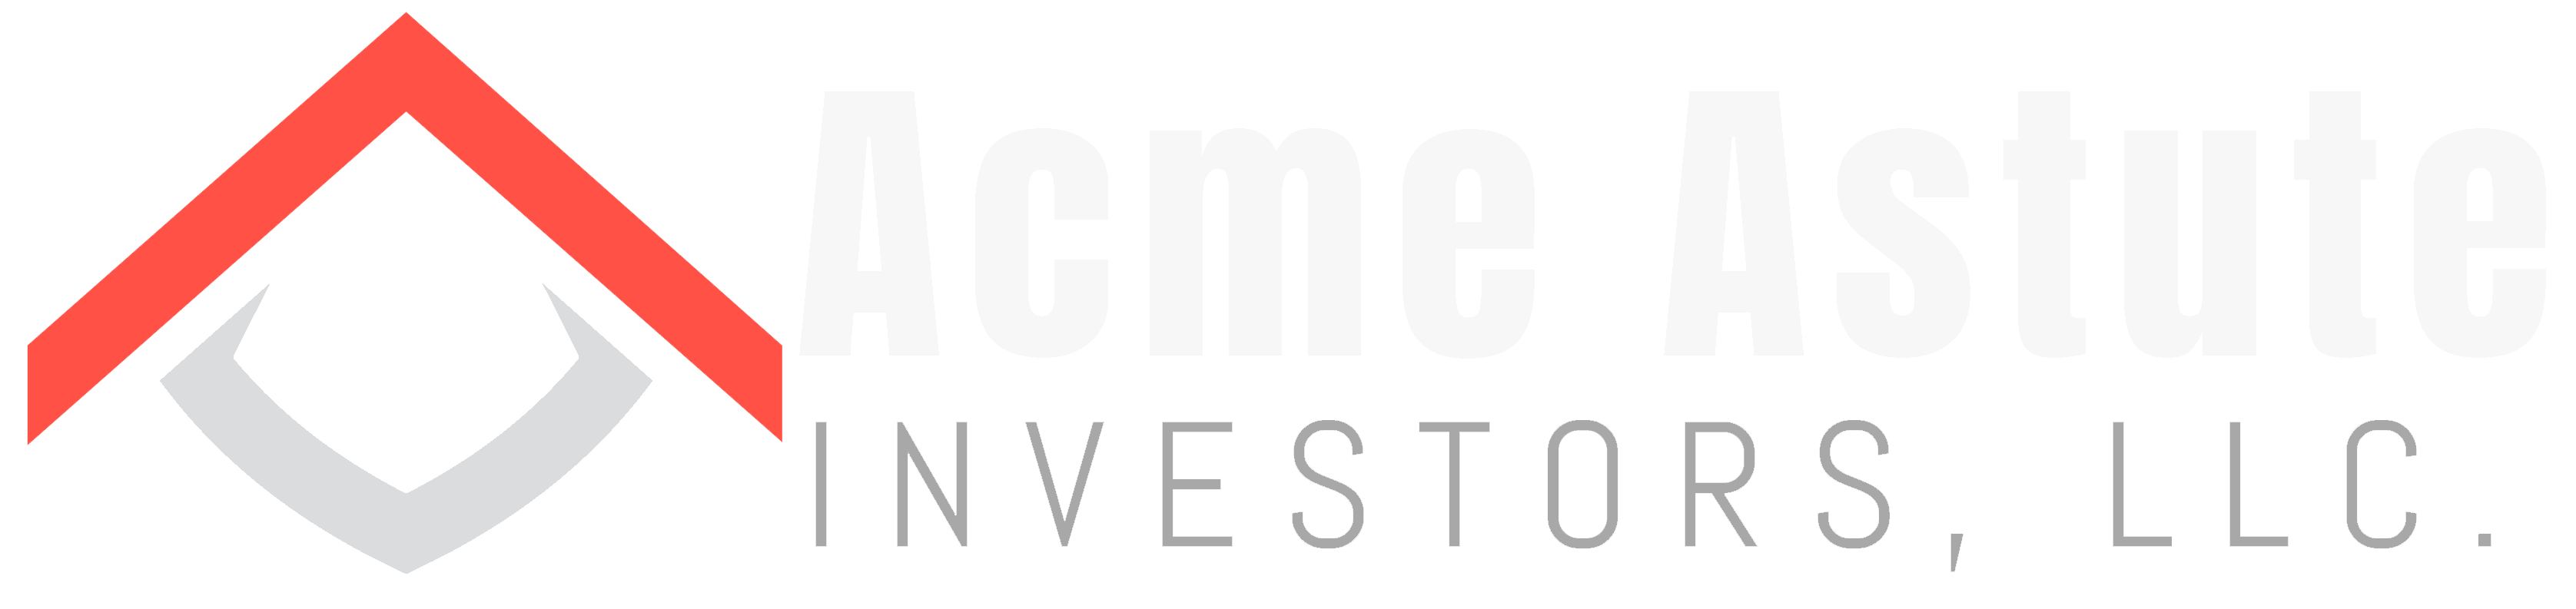 Acme Astute Investors LLCTeam Details